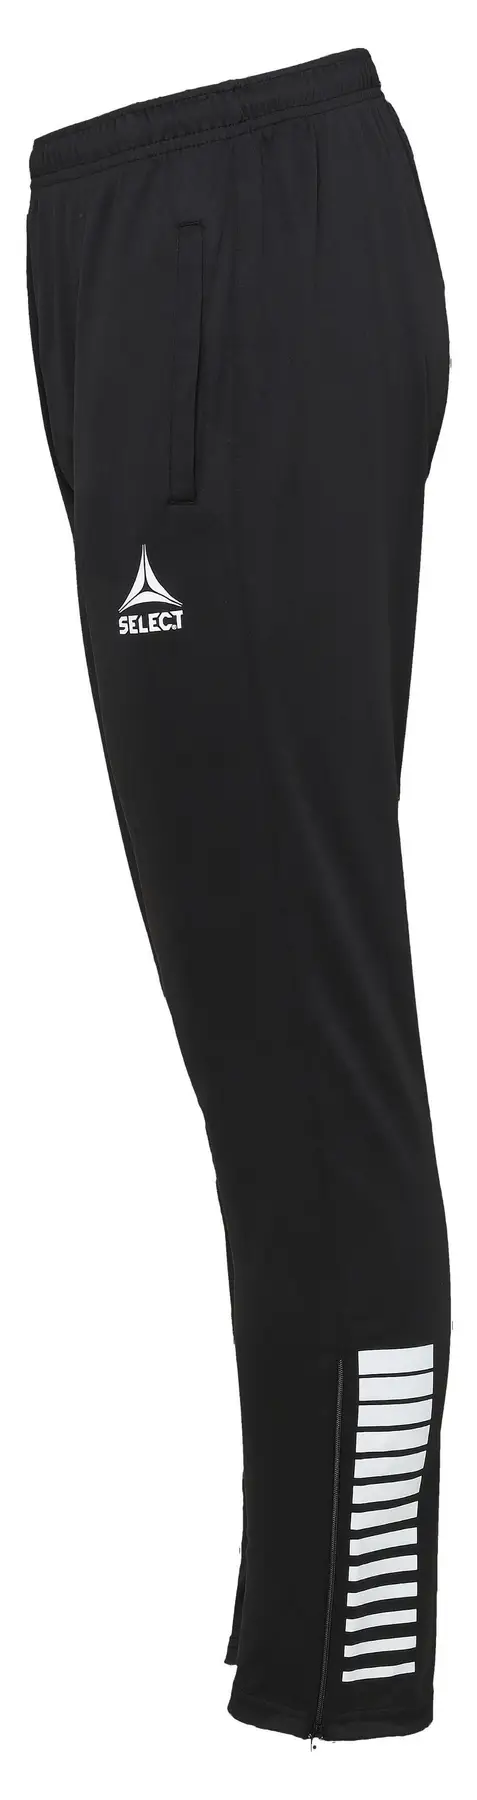 Штаны SELECT Argentina pants  чорний, 8 років фото товара